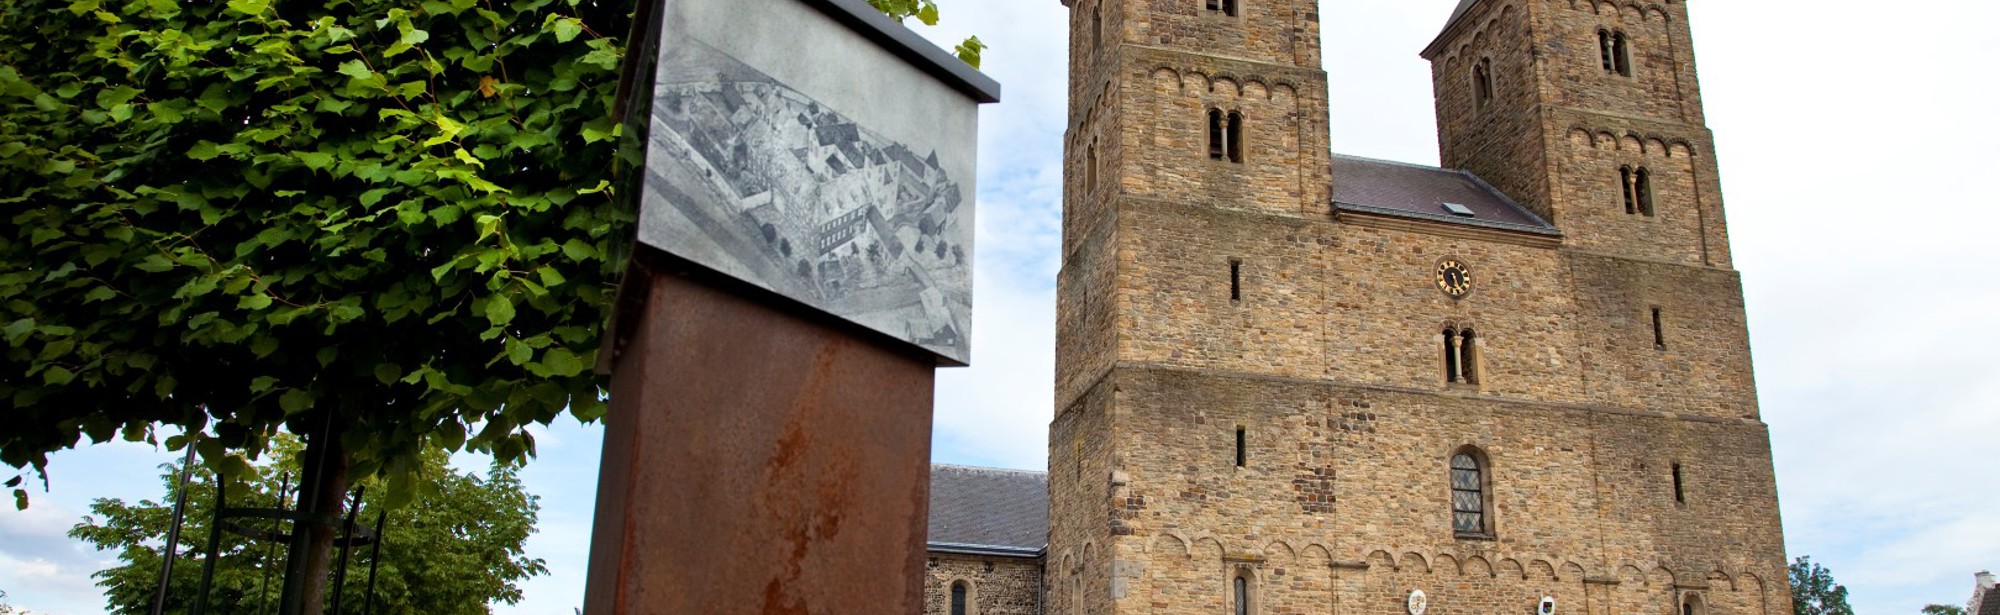 Amelberga basiliek in Susteren - voorkant gefotografeerd vanaf het plein met een historisch weergave op infopaal